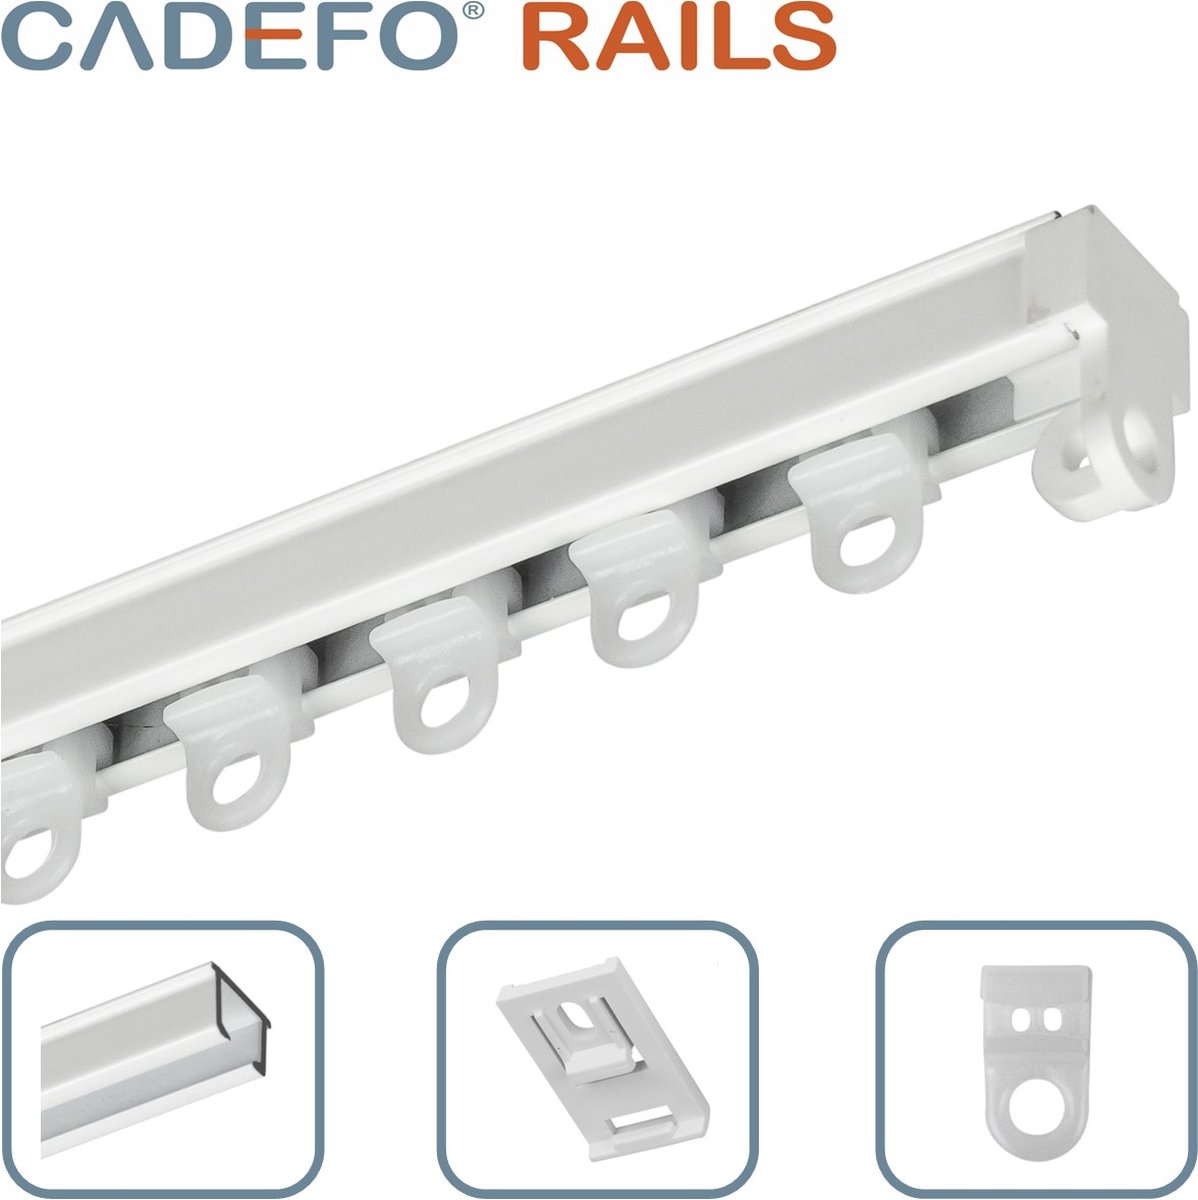 CADEFO RAILS (501 - 550 cm) Gordijnrails - Compleet op maat! - UIT 1 STUK - Leverbaar tot 6 meter - Plafondbevestiging - Lengte 537 cm